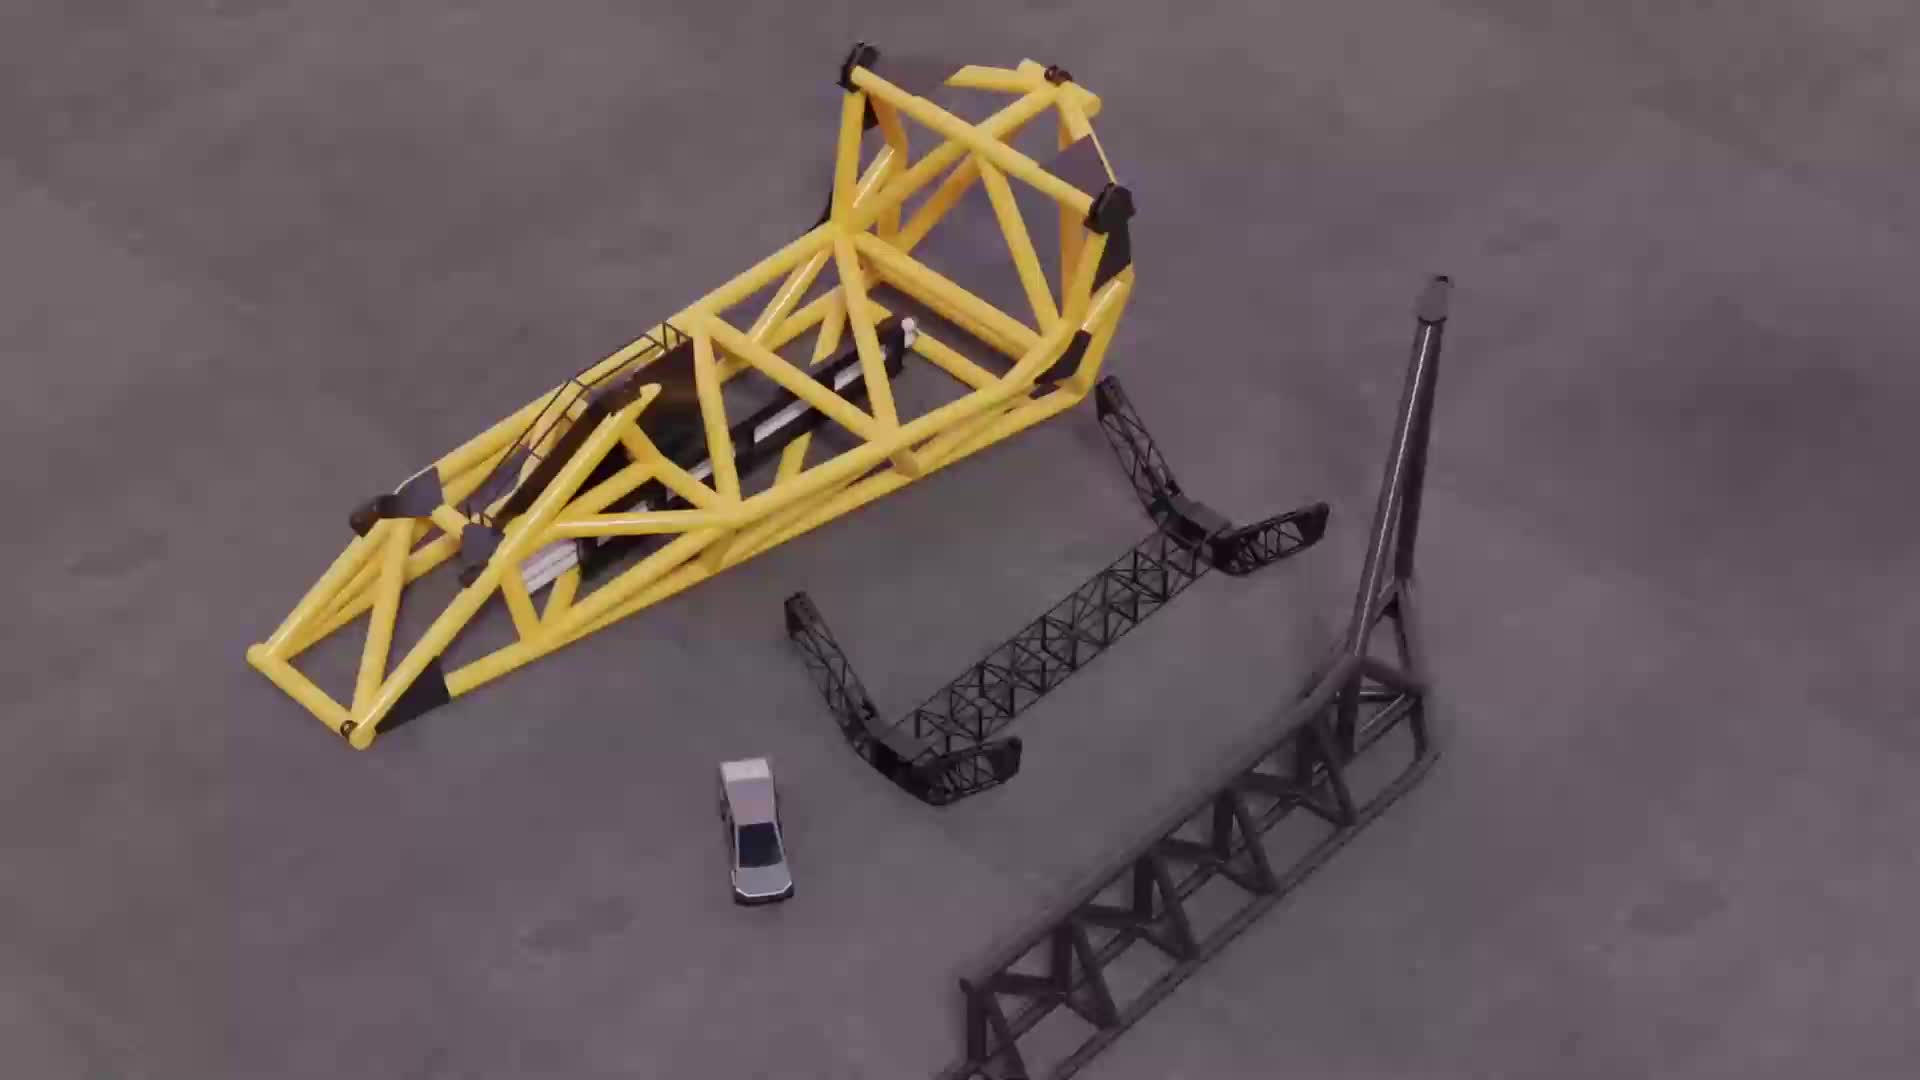 【中文】SpaceX星舰回收机构3D结构展示